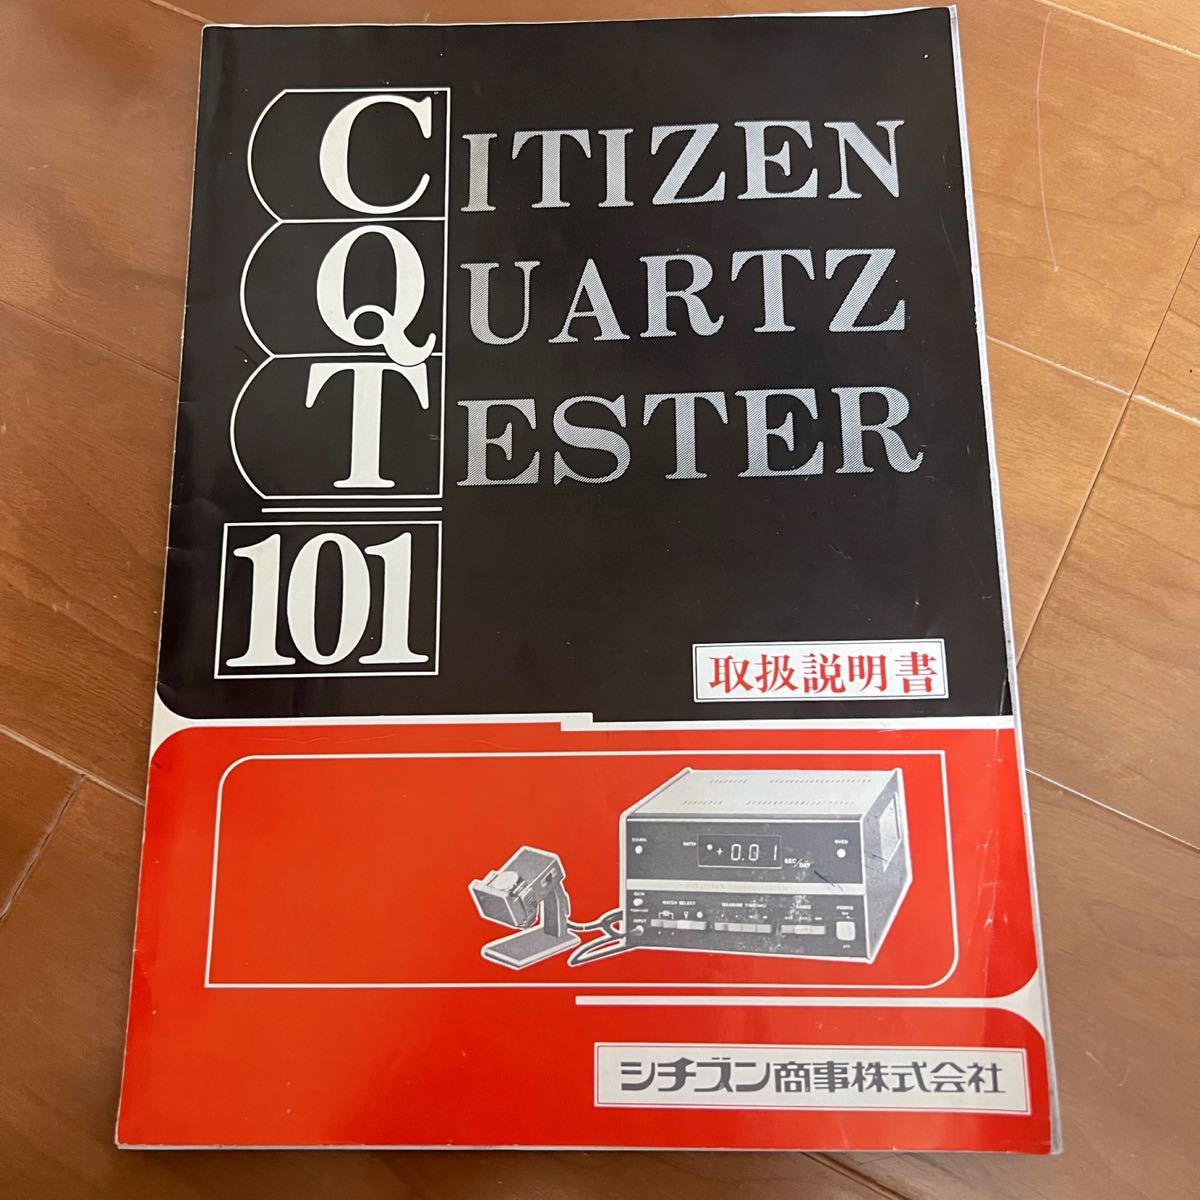 【説明書有・フルオプション】 CITIZEN クォーツテスター CQT-101d Quartz tester_画像5